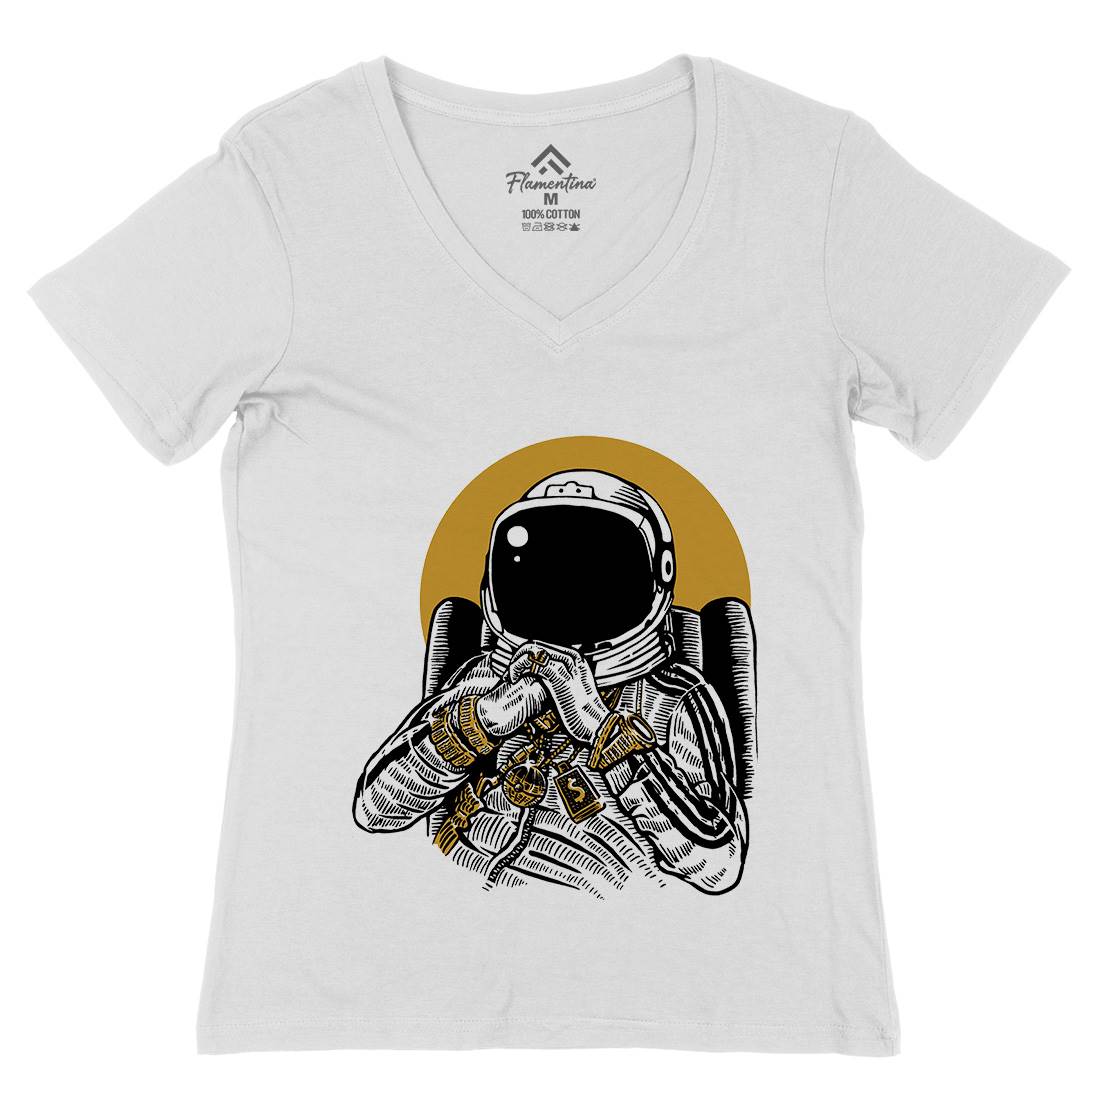 Dj Womens Organic V-Neck T-Shirt Space A575